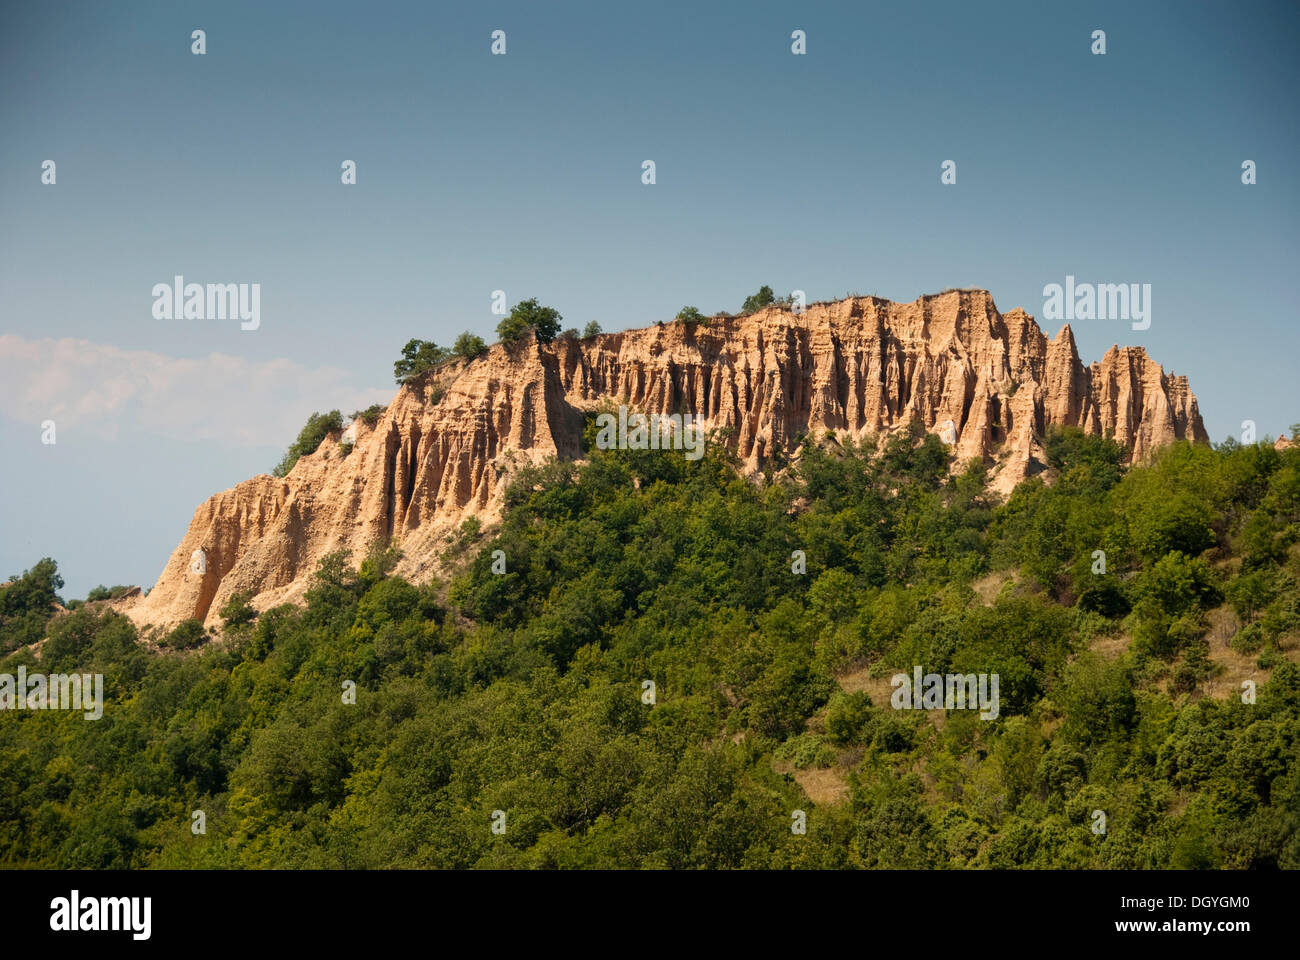 Los acantilados de color arena alrededor de Melnik, zona vinícola, al sur de Bulgaria, Europa Foto de stock